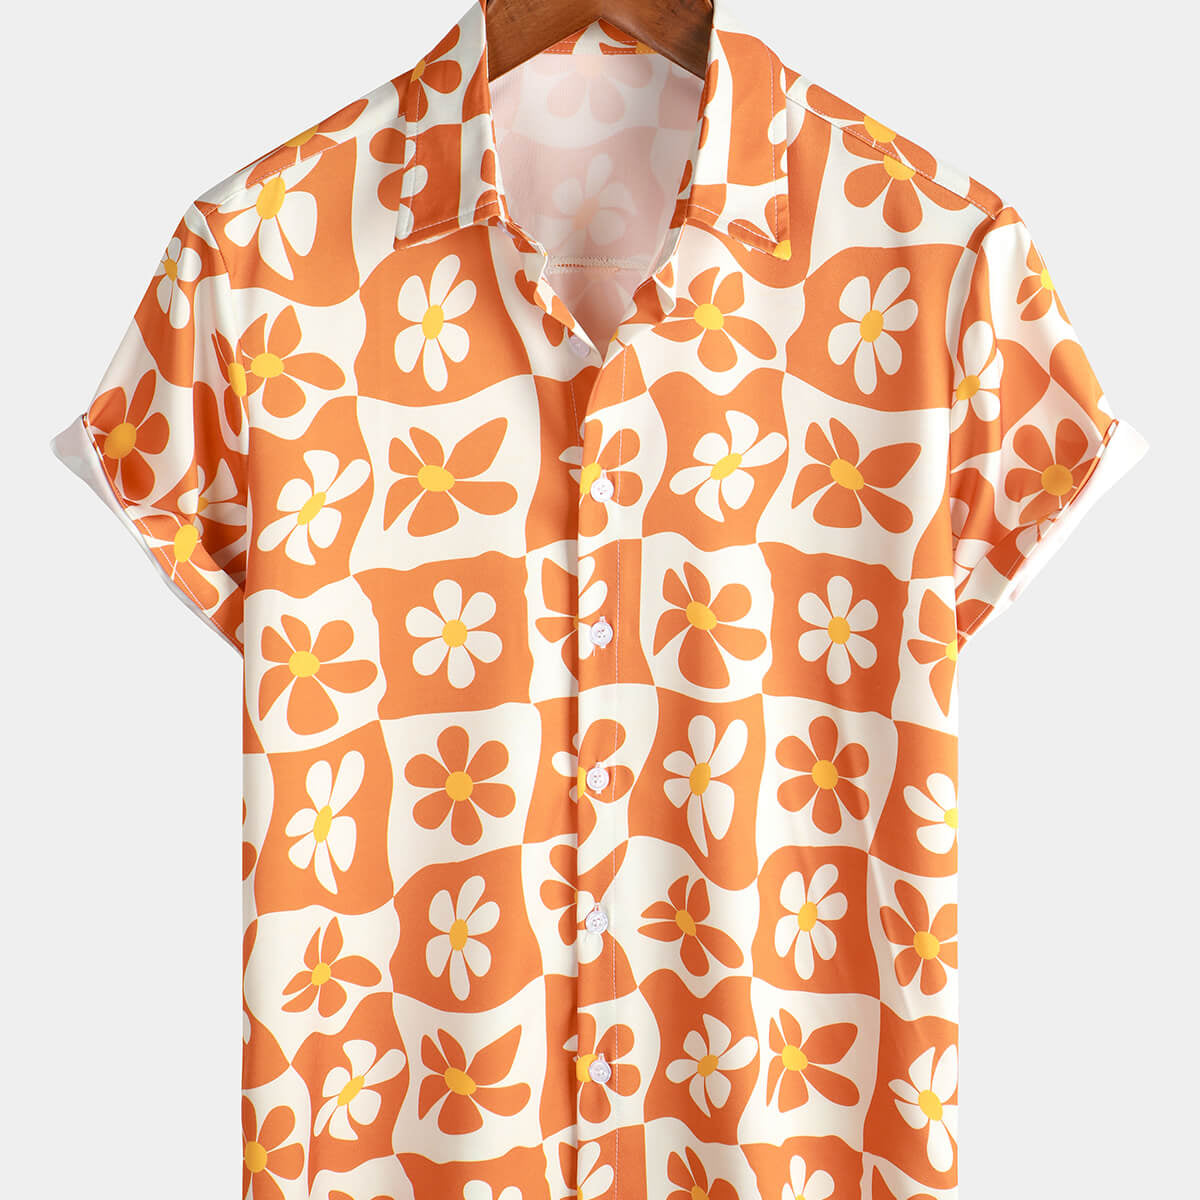 Camisa de verano de playa de manga corta con flores de los años 70 y botones vintage a cuadros naranja floral para hombre